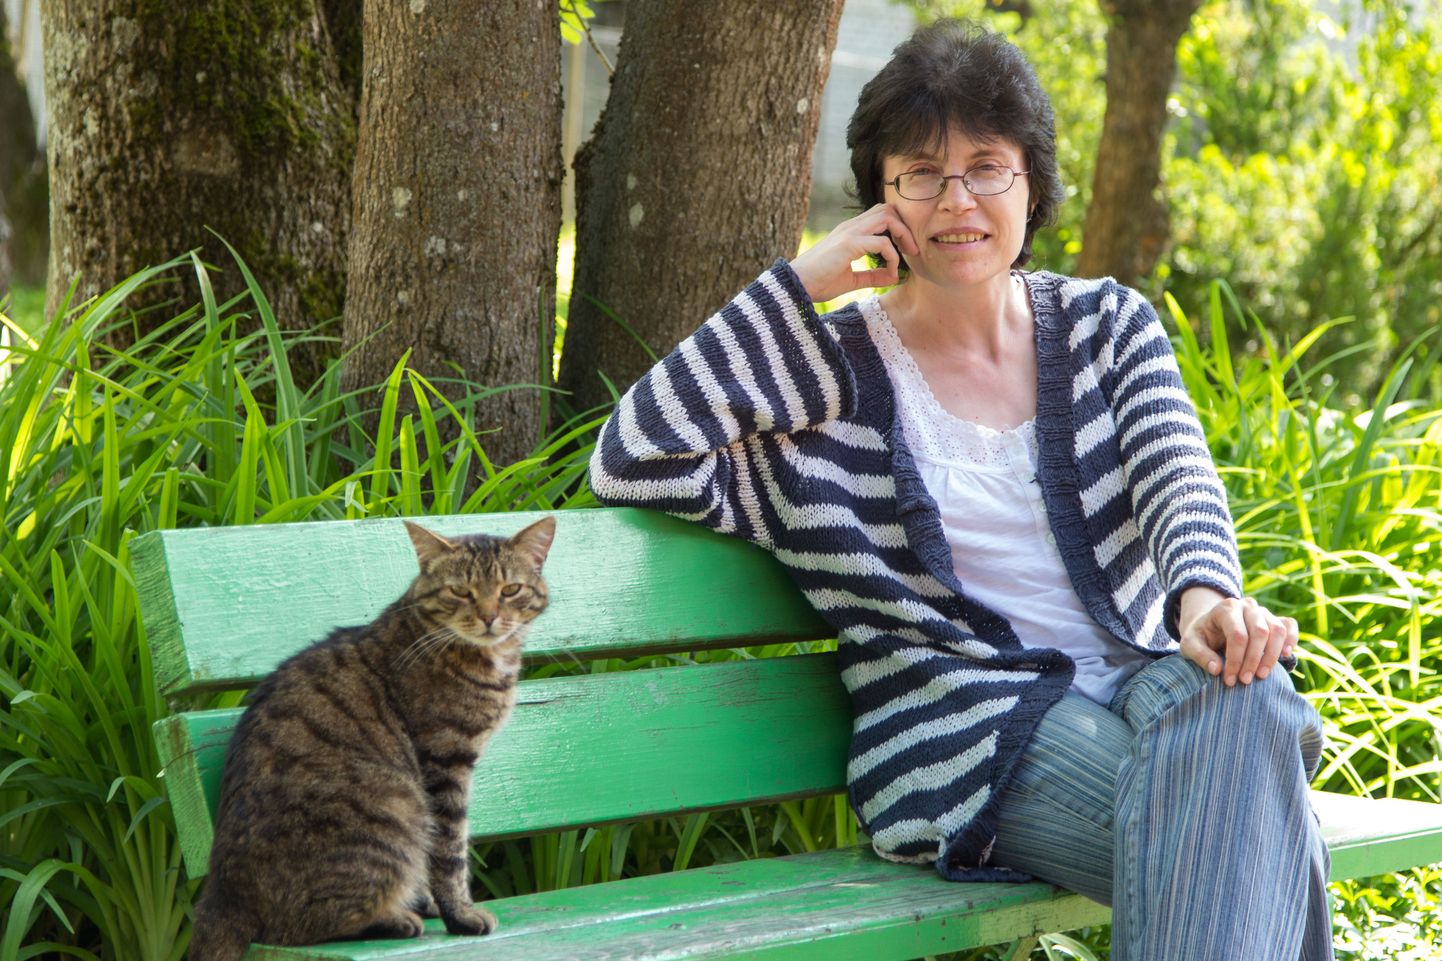 Aasta diakooniatöötaja tiitliga tunnustatud Ester Liinakul jagub tähelepanu, armastust ja hoolivust nii inimestele kui loomadele. Koguduse majas on endale teise kodu leidnud kaks kassigi.